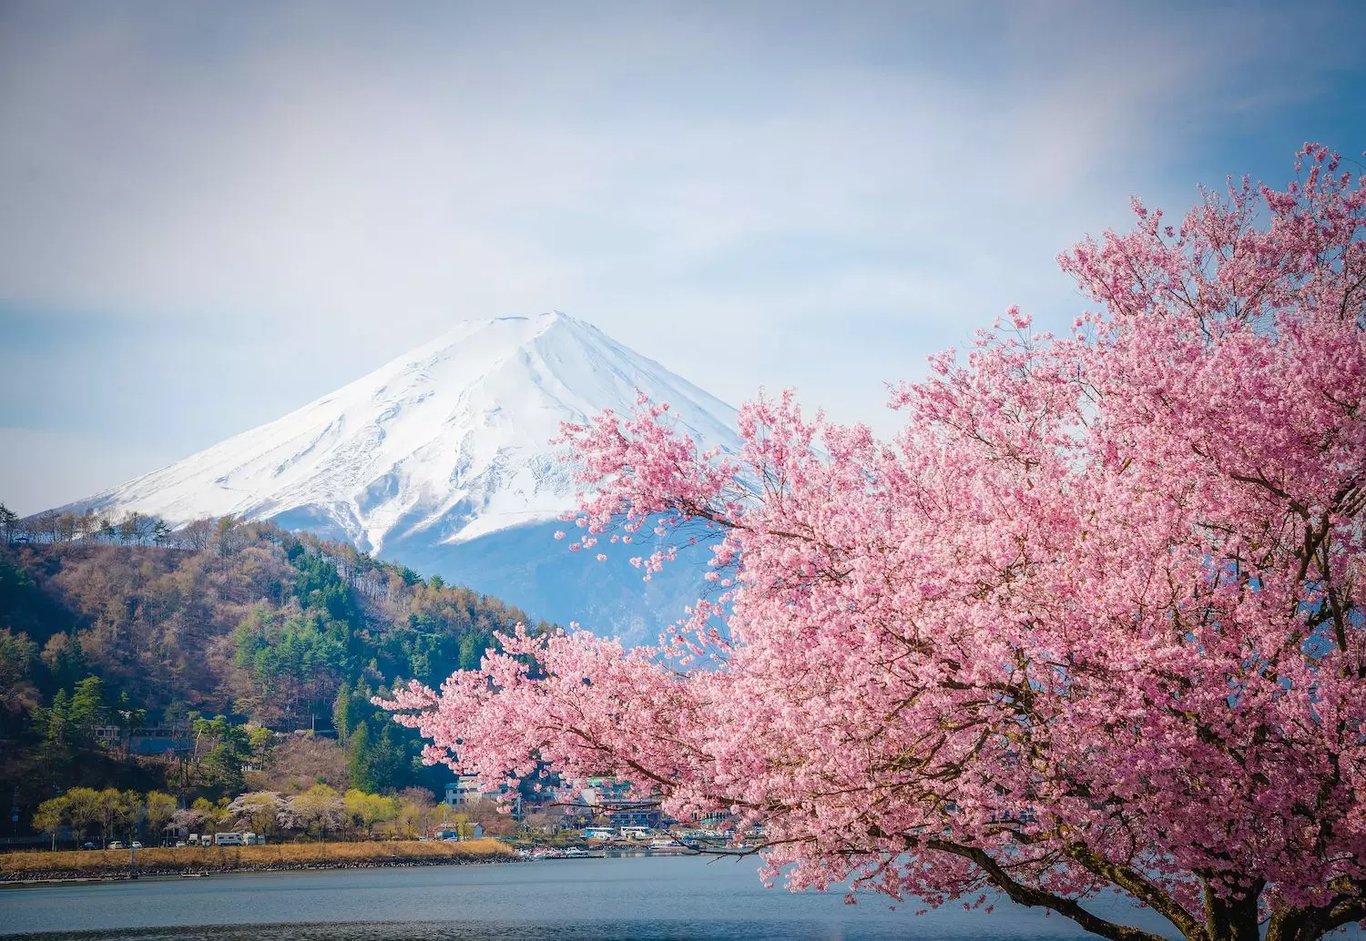 Climbing Fuji-san | No1 Mountain in Japan